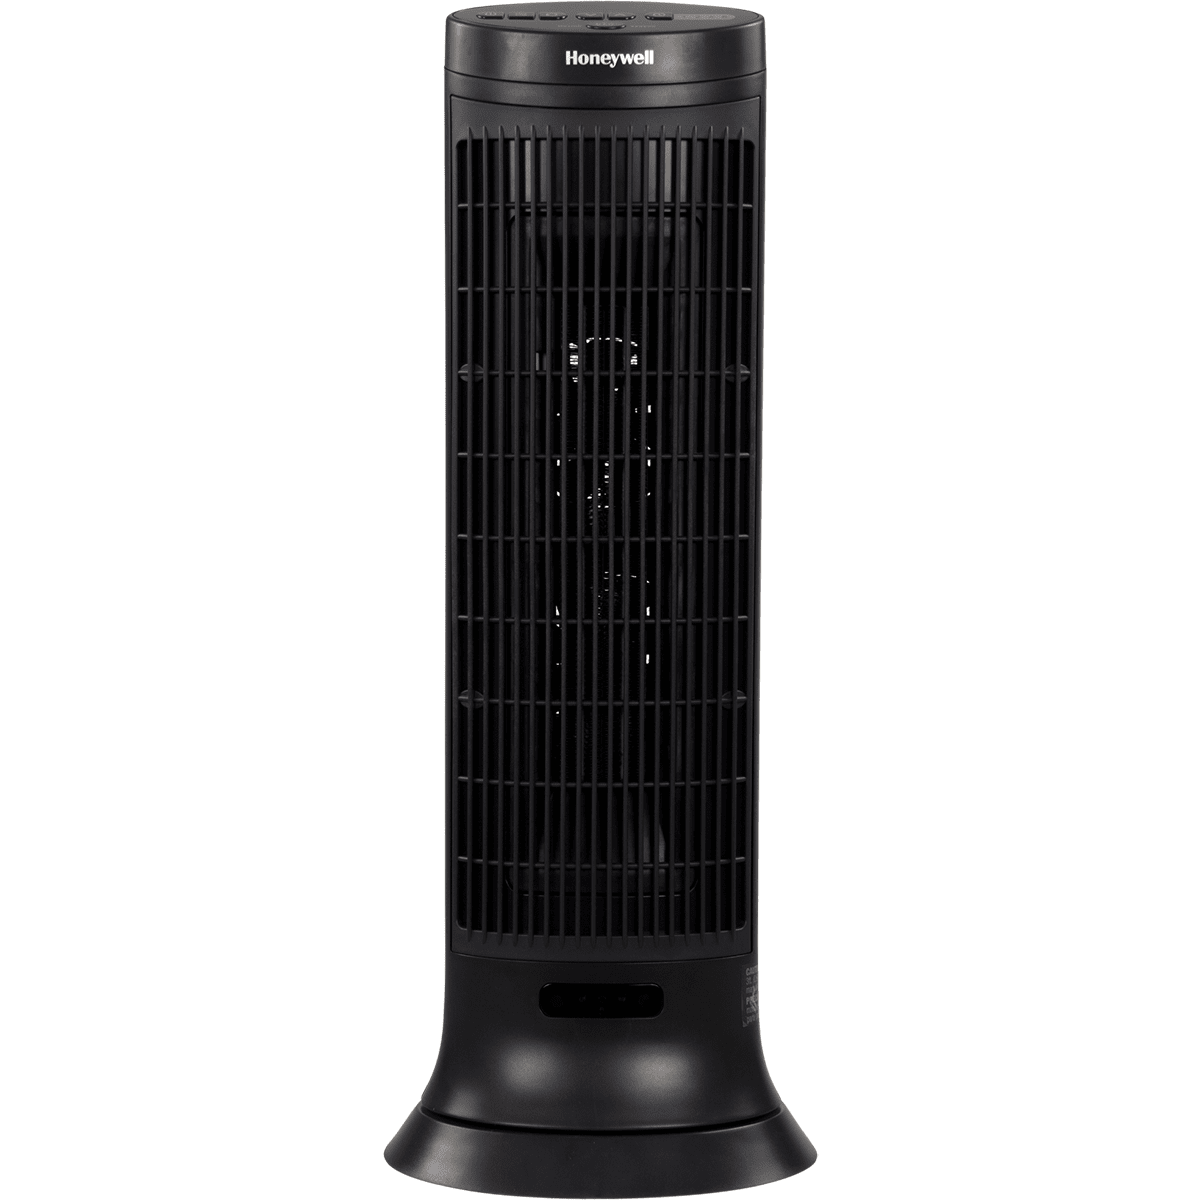 Honeywell Hce323v Digital Ceramic Tower Heater